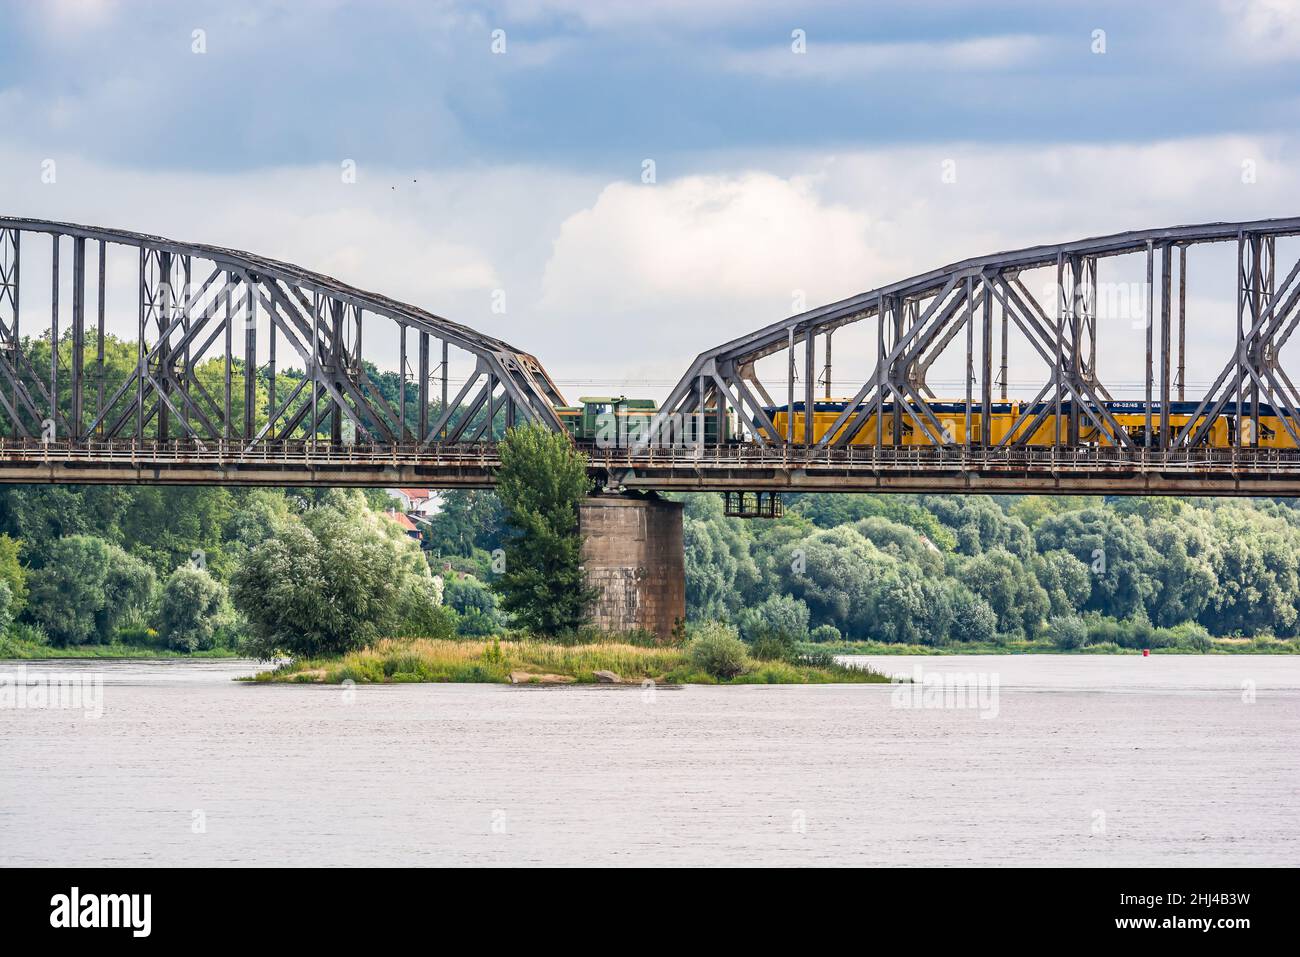 Torun, Poland - August 11, 2021. Ernest Malinowski Railway Bridge - Most kolejowy im. Ernesta Malinowskiego - in Summer Stock Photo